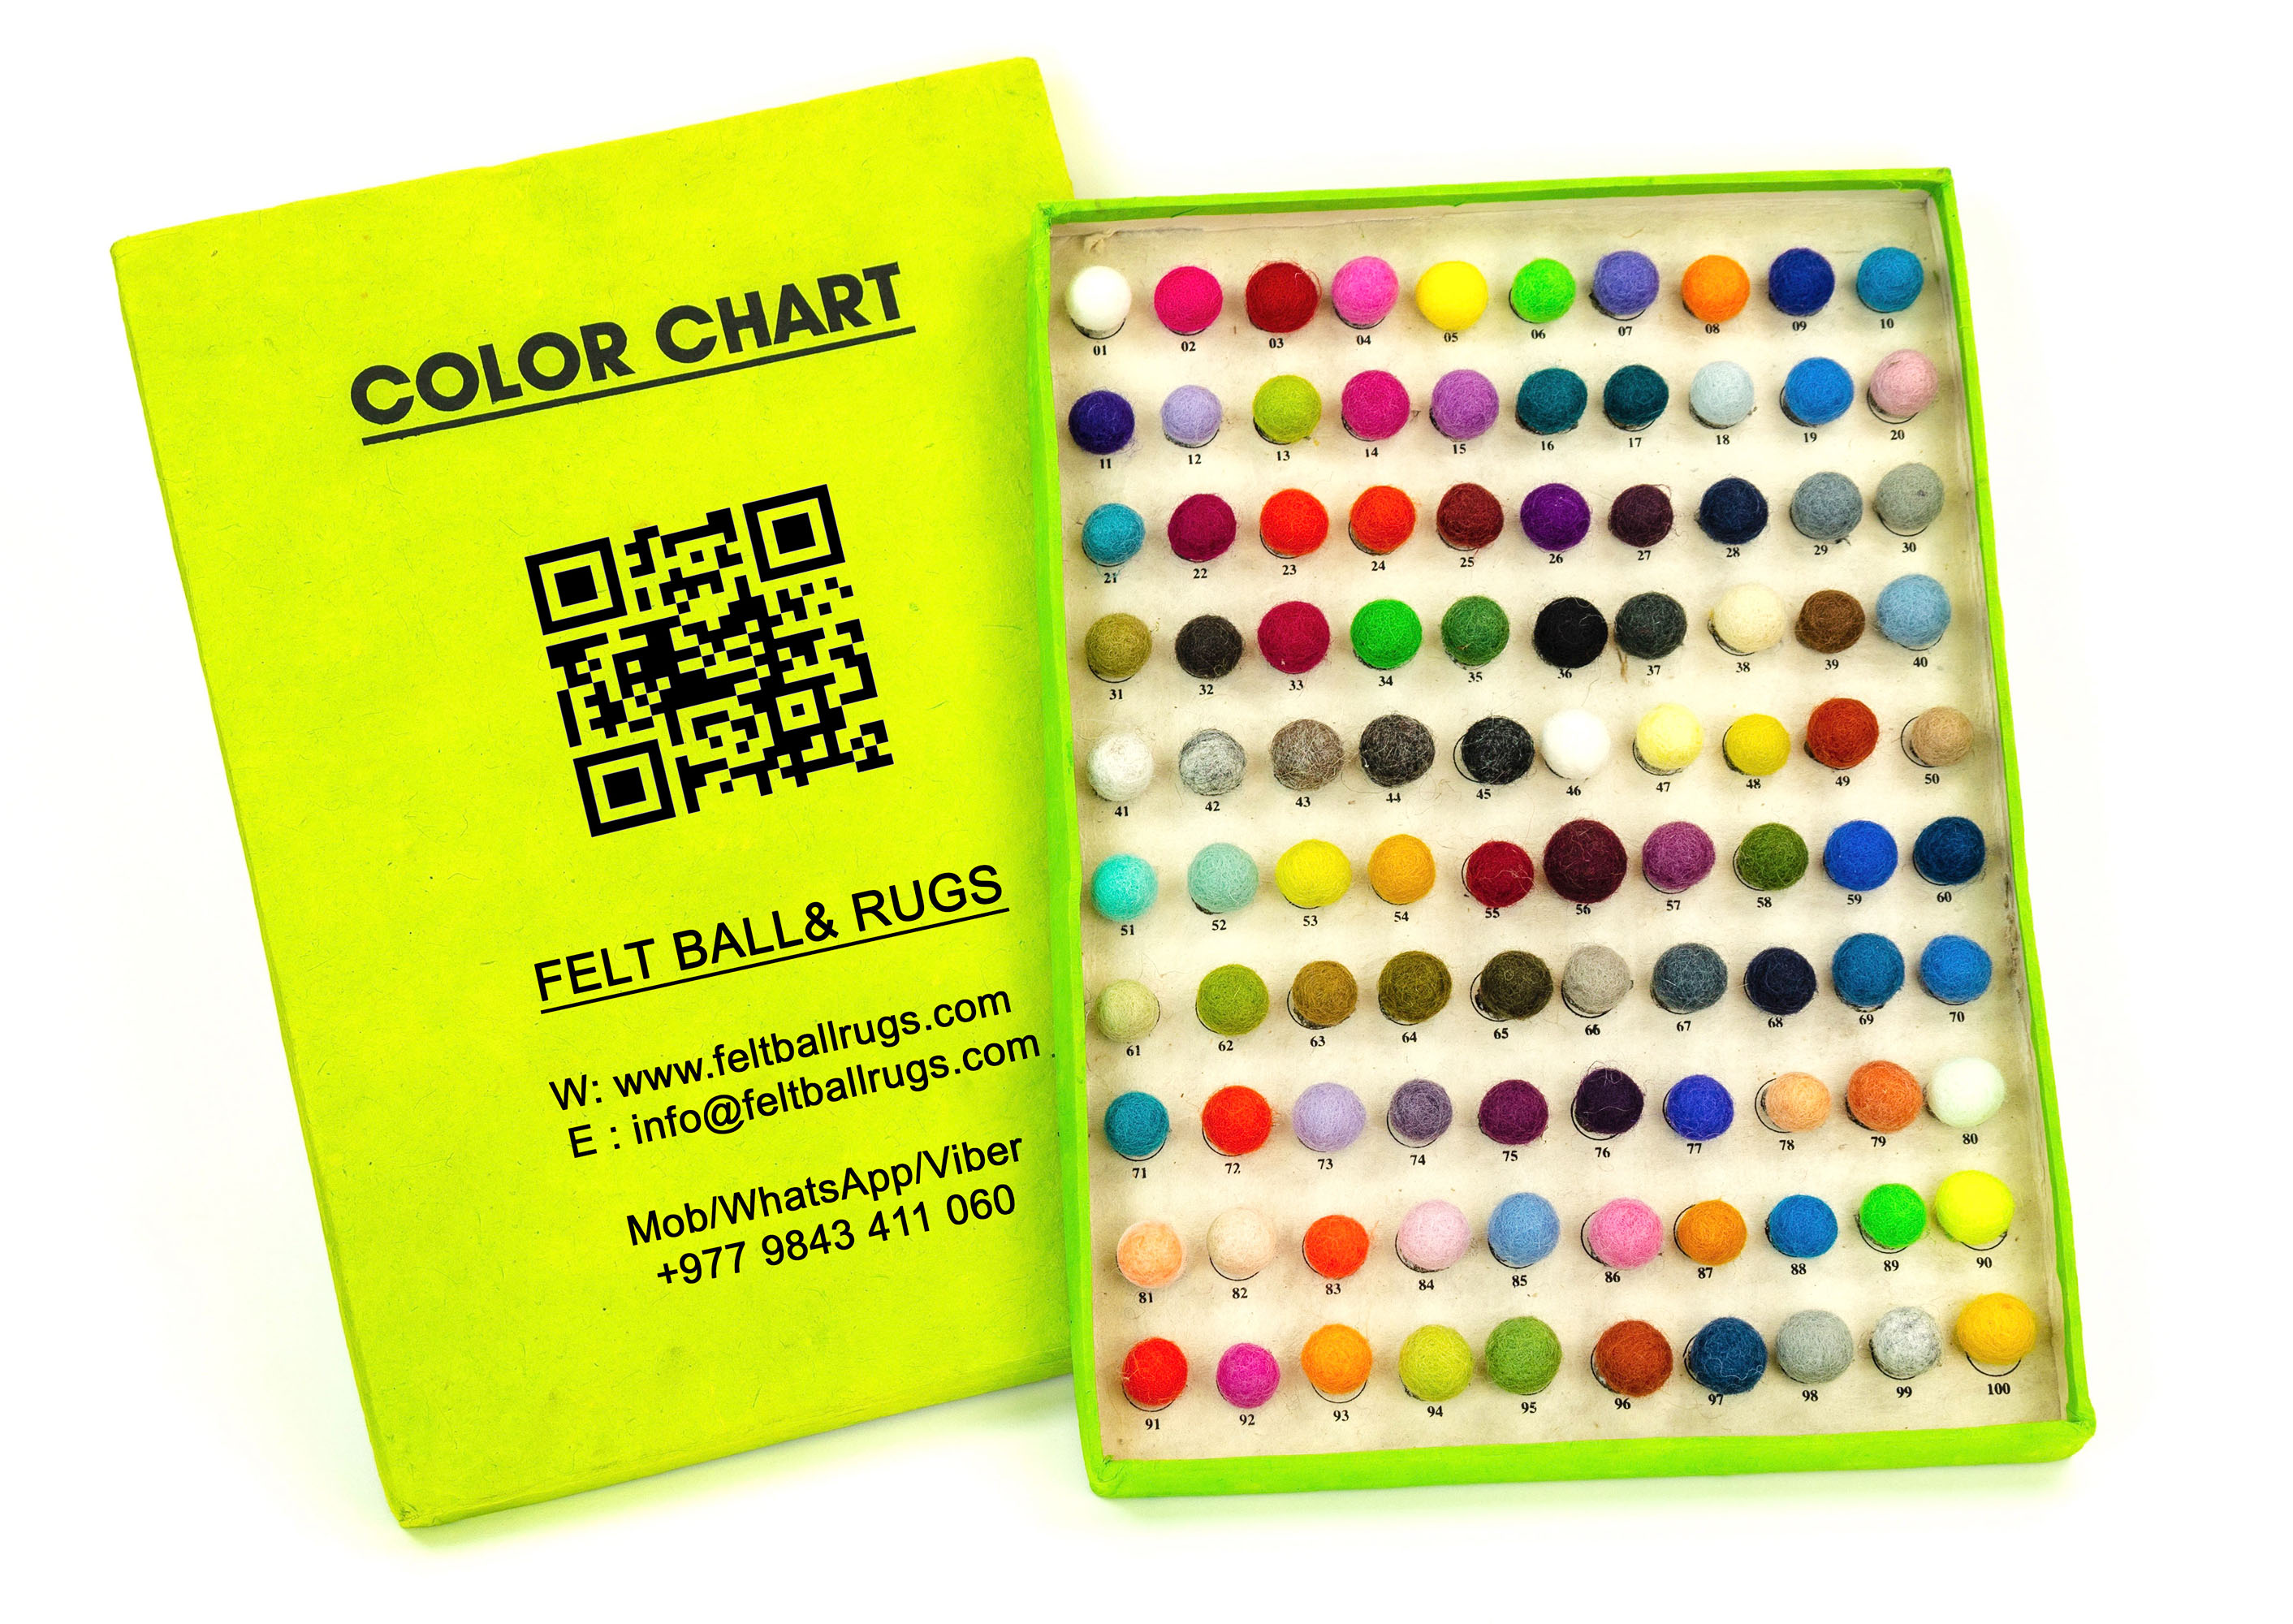 Color Chart - Felt Ball & Rugs